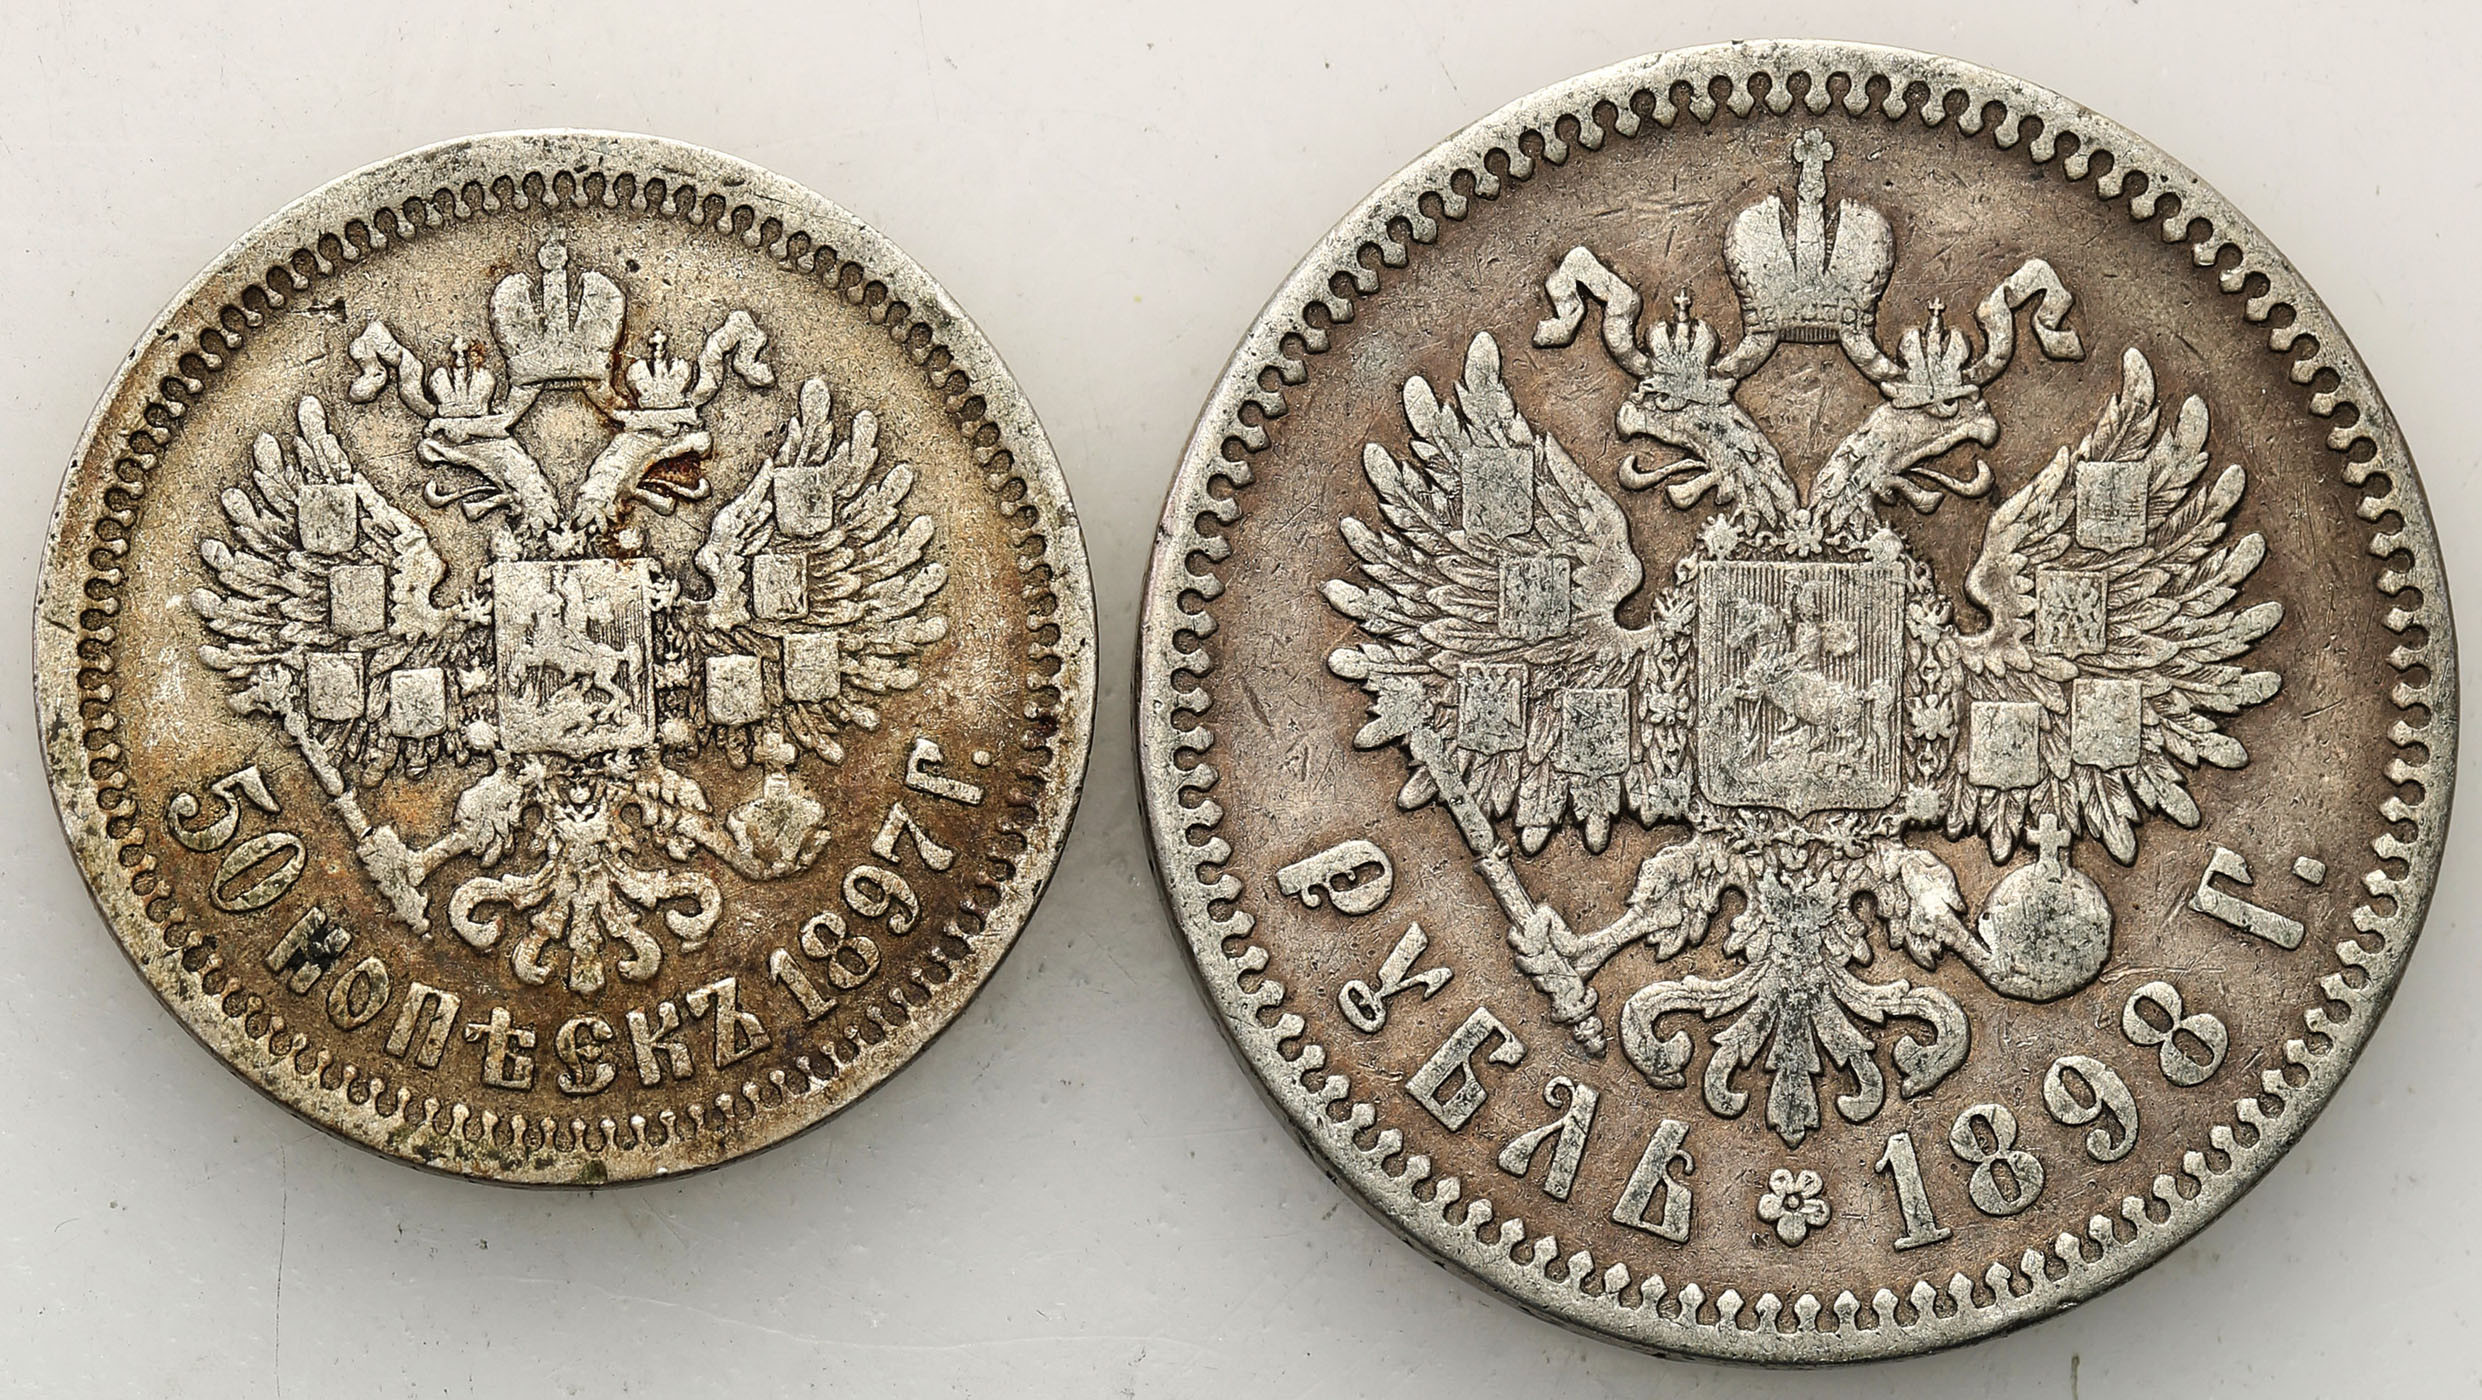 Rosja. Mikołaj II. Rubel 1898 ★, 50 kopiejek 1897 ★, Paryż, zestaw 2 monet